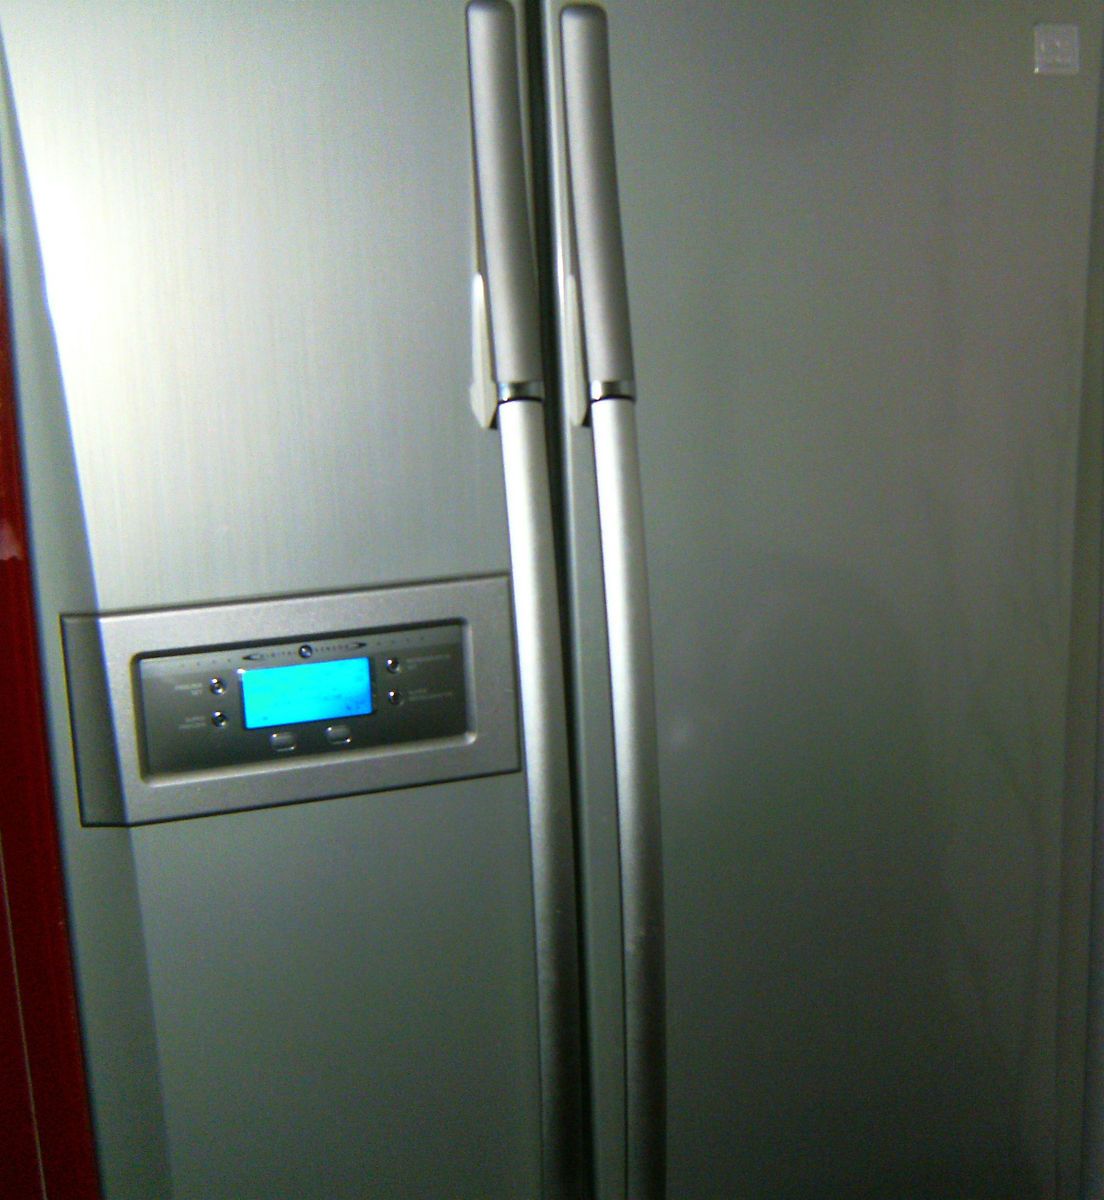 Daewoo FRS 2021 IAL 586 Liter Kühlschrank